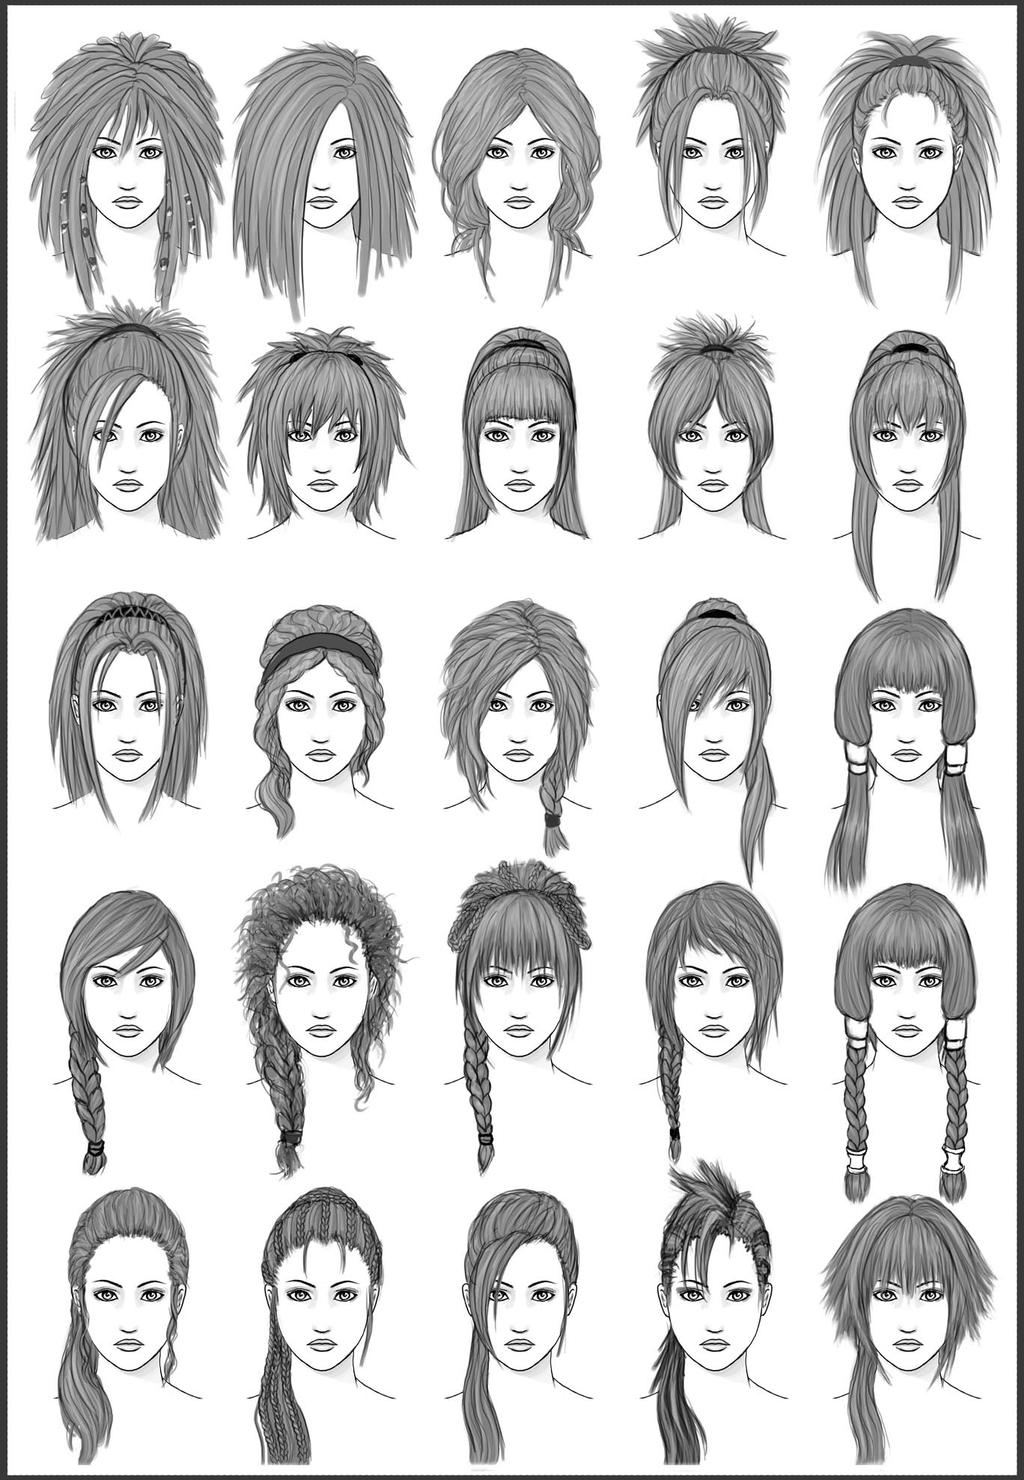 Women's Hair - Set 3 by dark-sheikah on DeviantArt